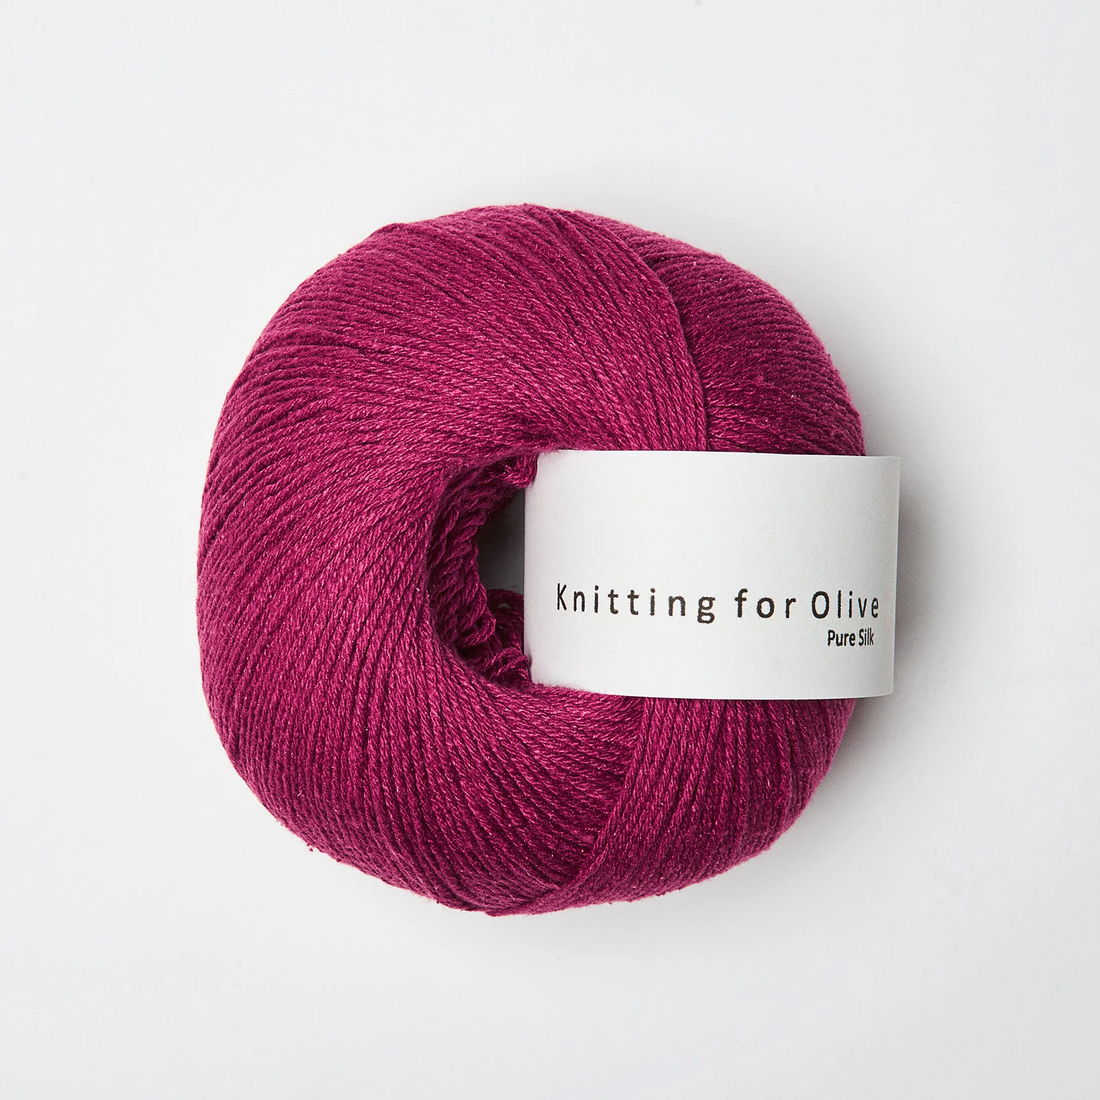 Nouveauté! Pure Silk, 100% soie - Knitting for Olive